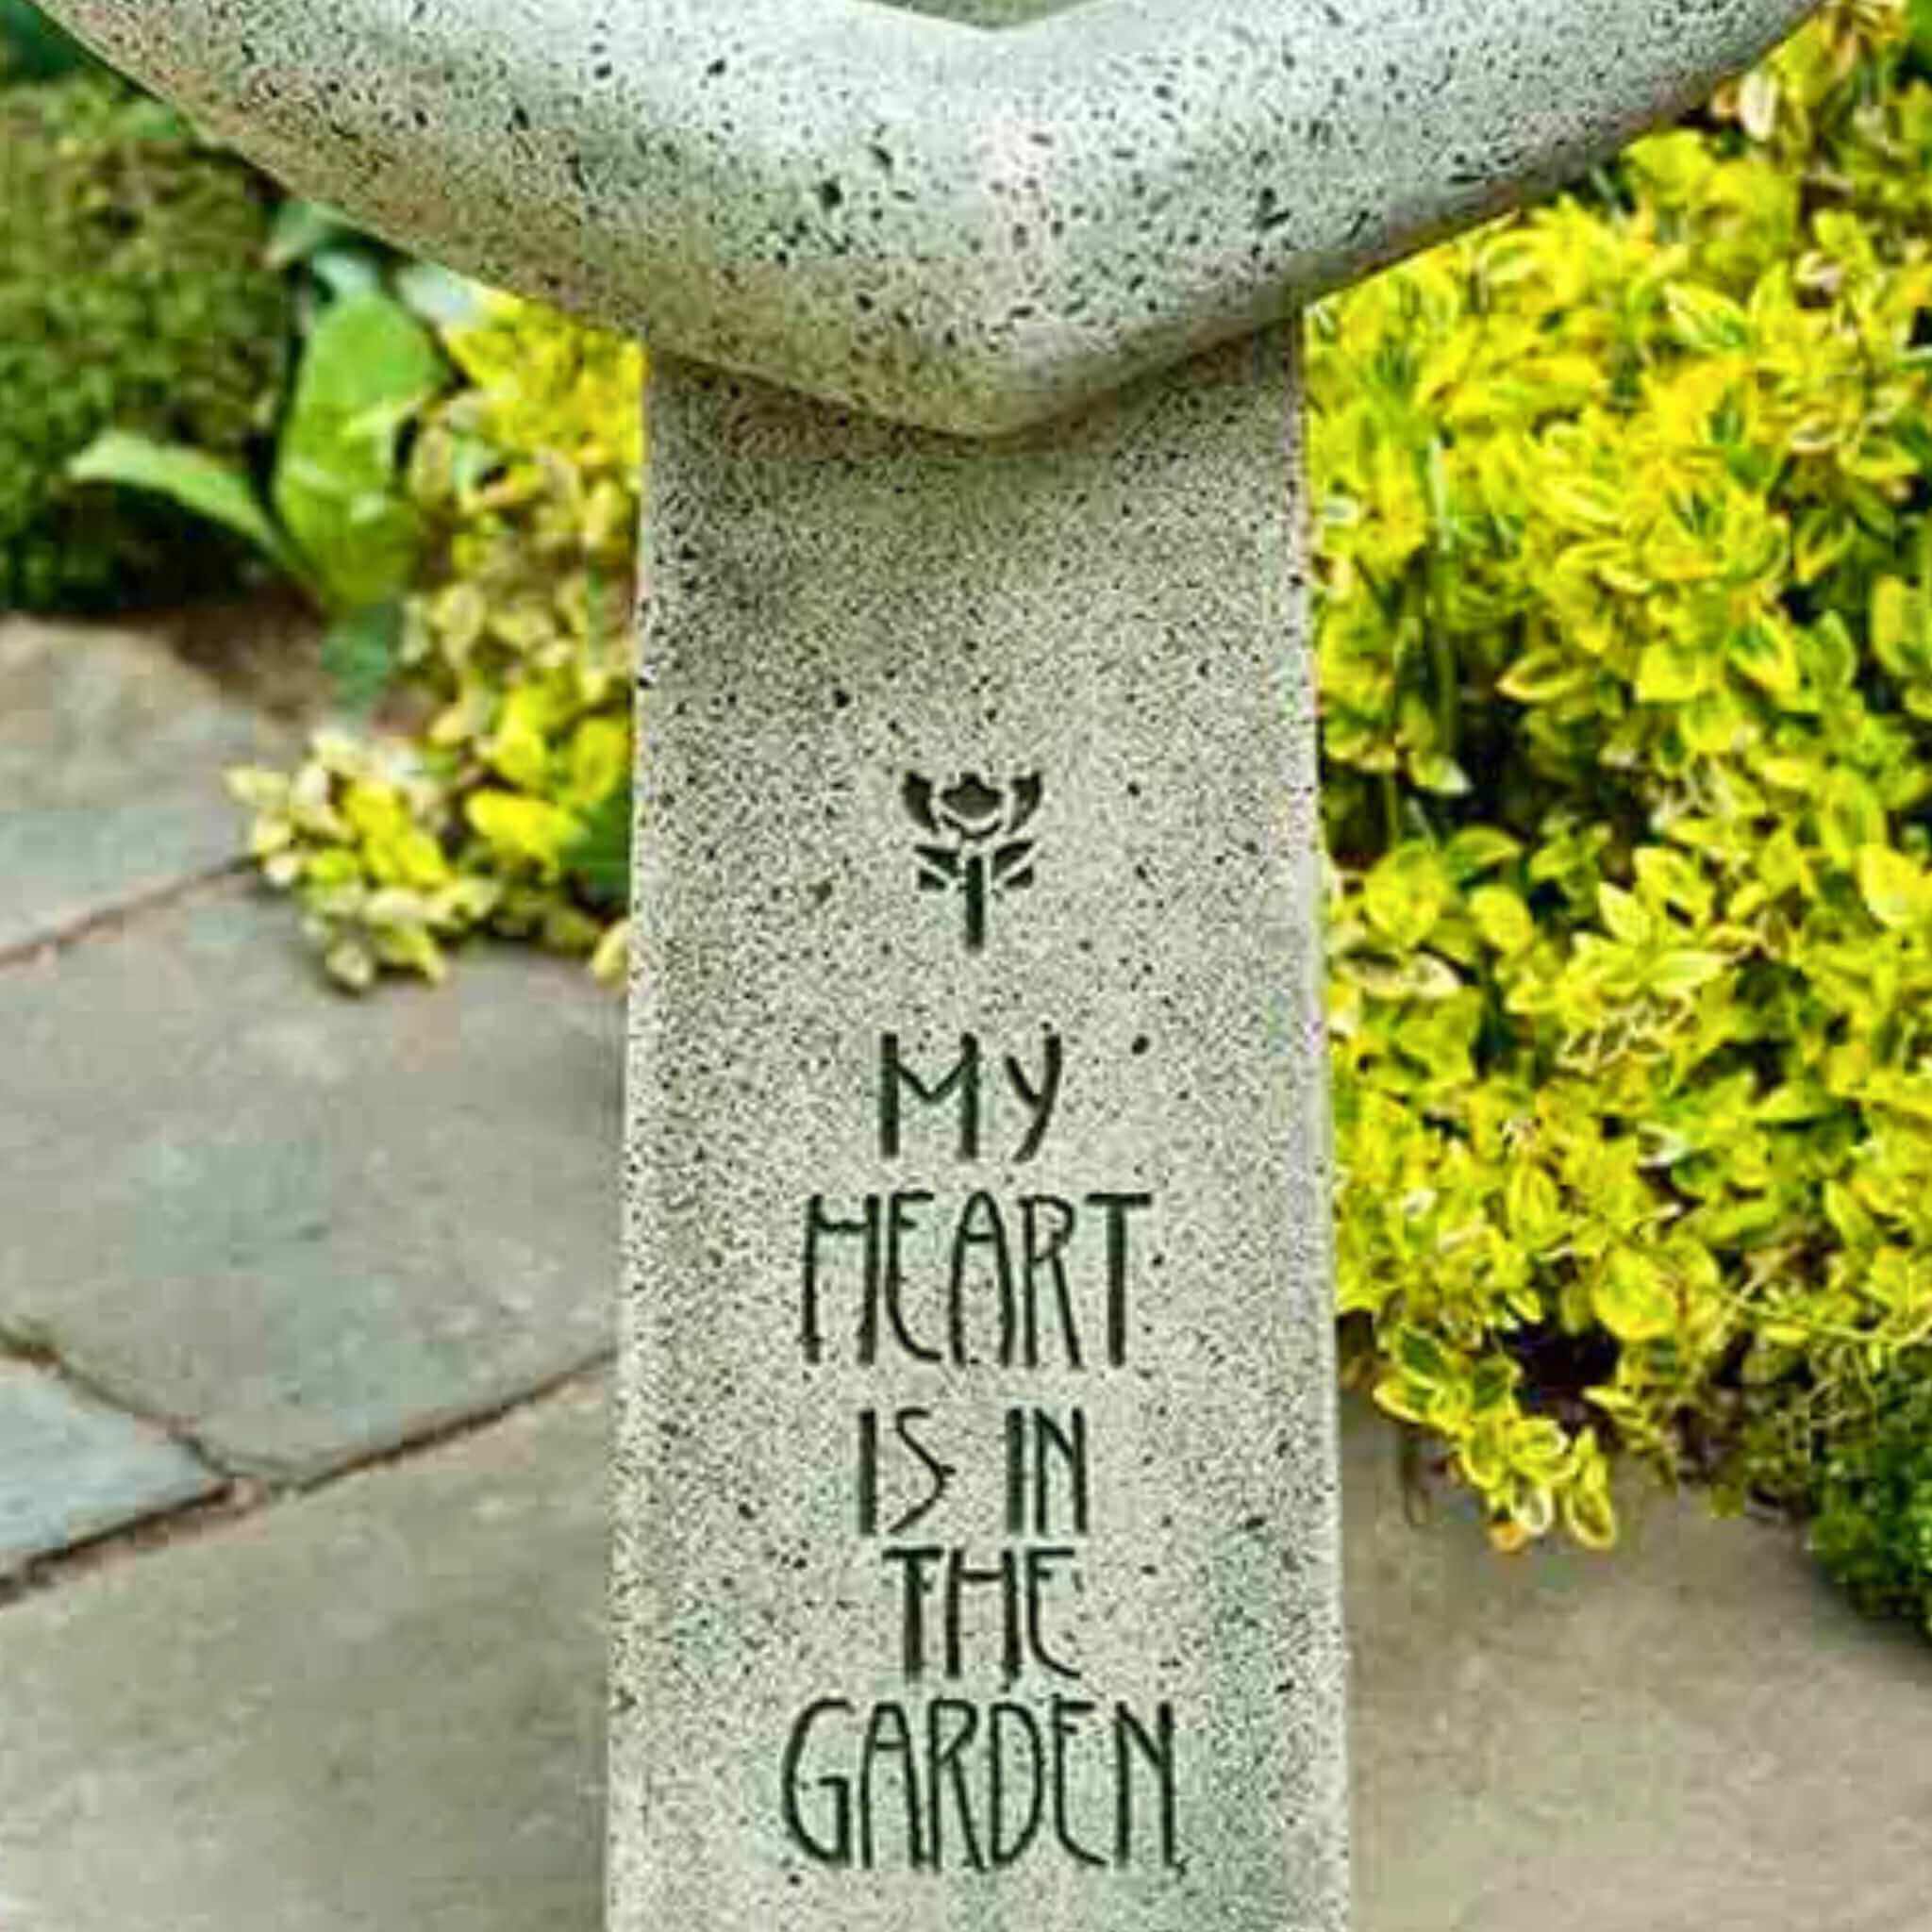 My Heart is in the Garden Concrete Bird Bath - Campania #B115